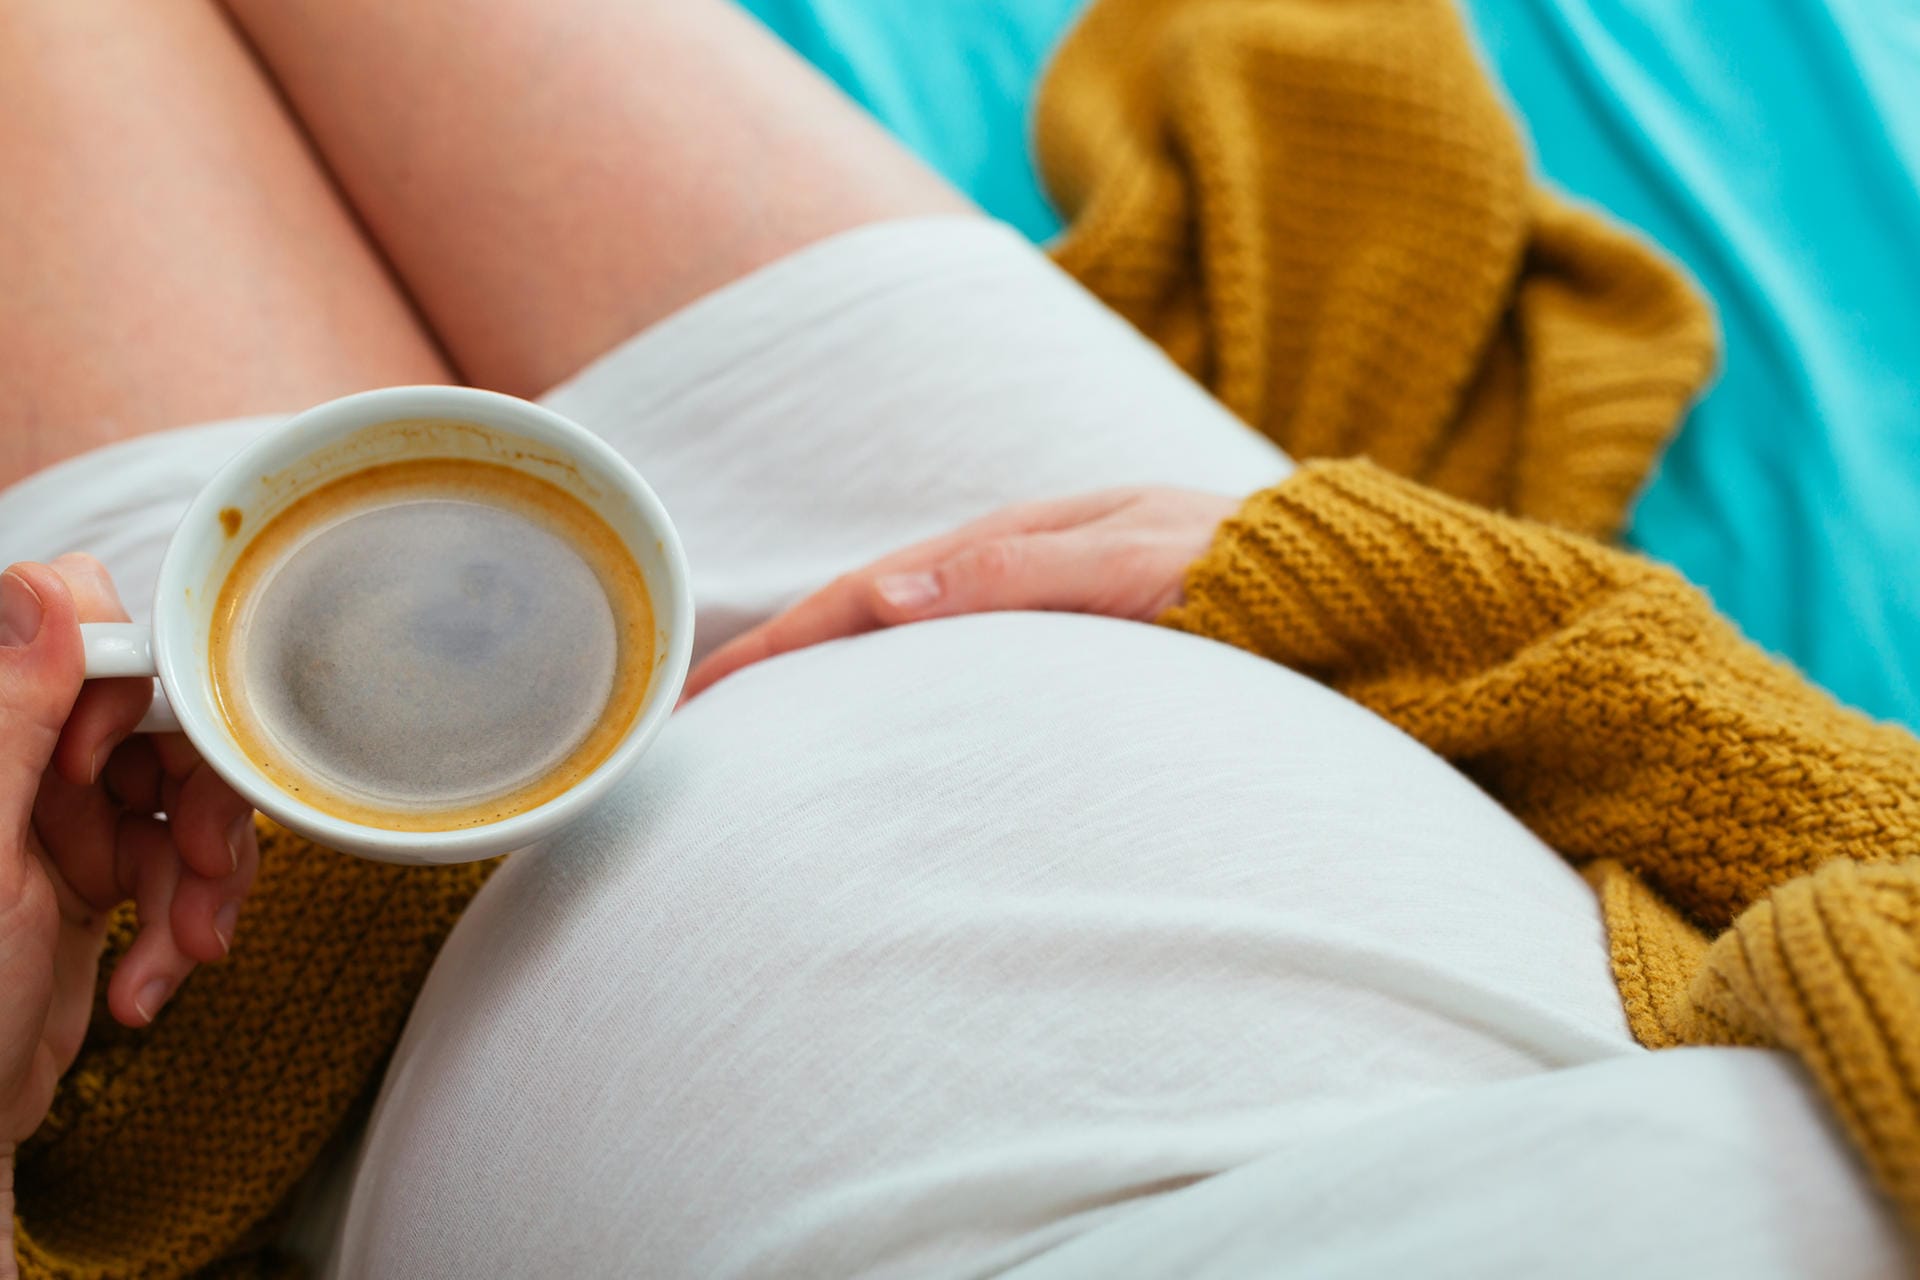 Aber nicht jeder verträgt Kaffee unter anderem wegen des enthaltenen Koffeins. Dazu gehören Schwangere, denn das Koffein übertritt die Plazenta. Der Fötus kann diesen Stoff jedoch noch nicht abbauen.